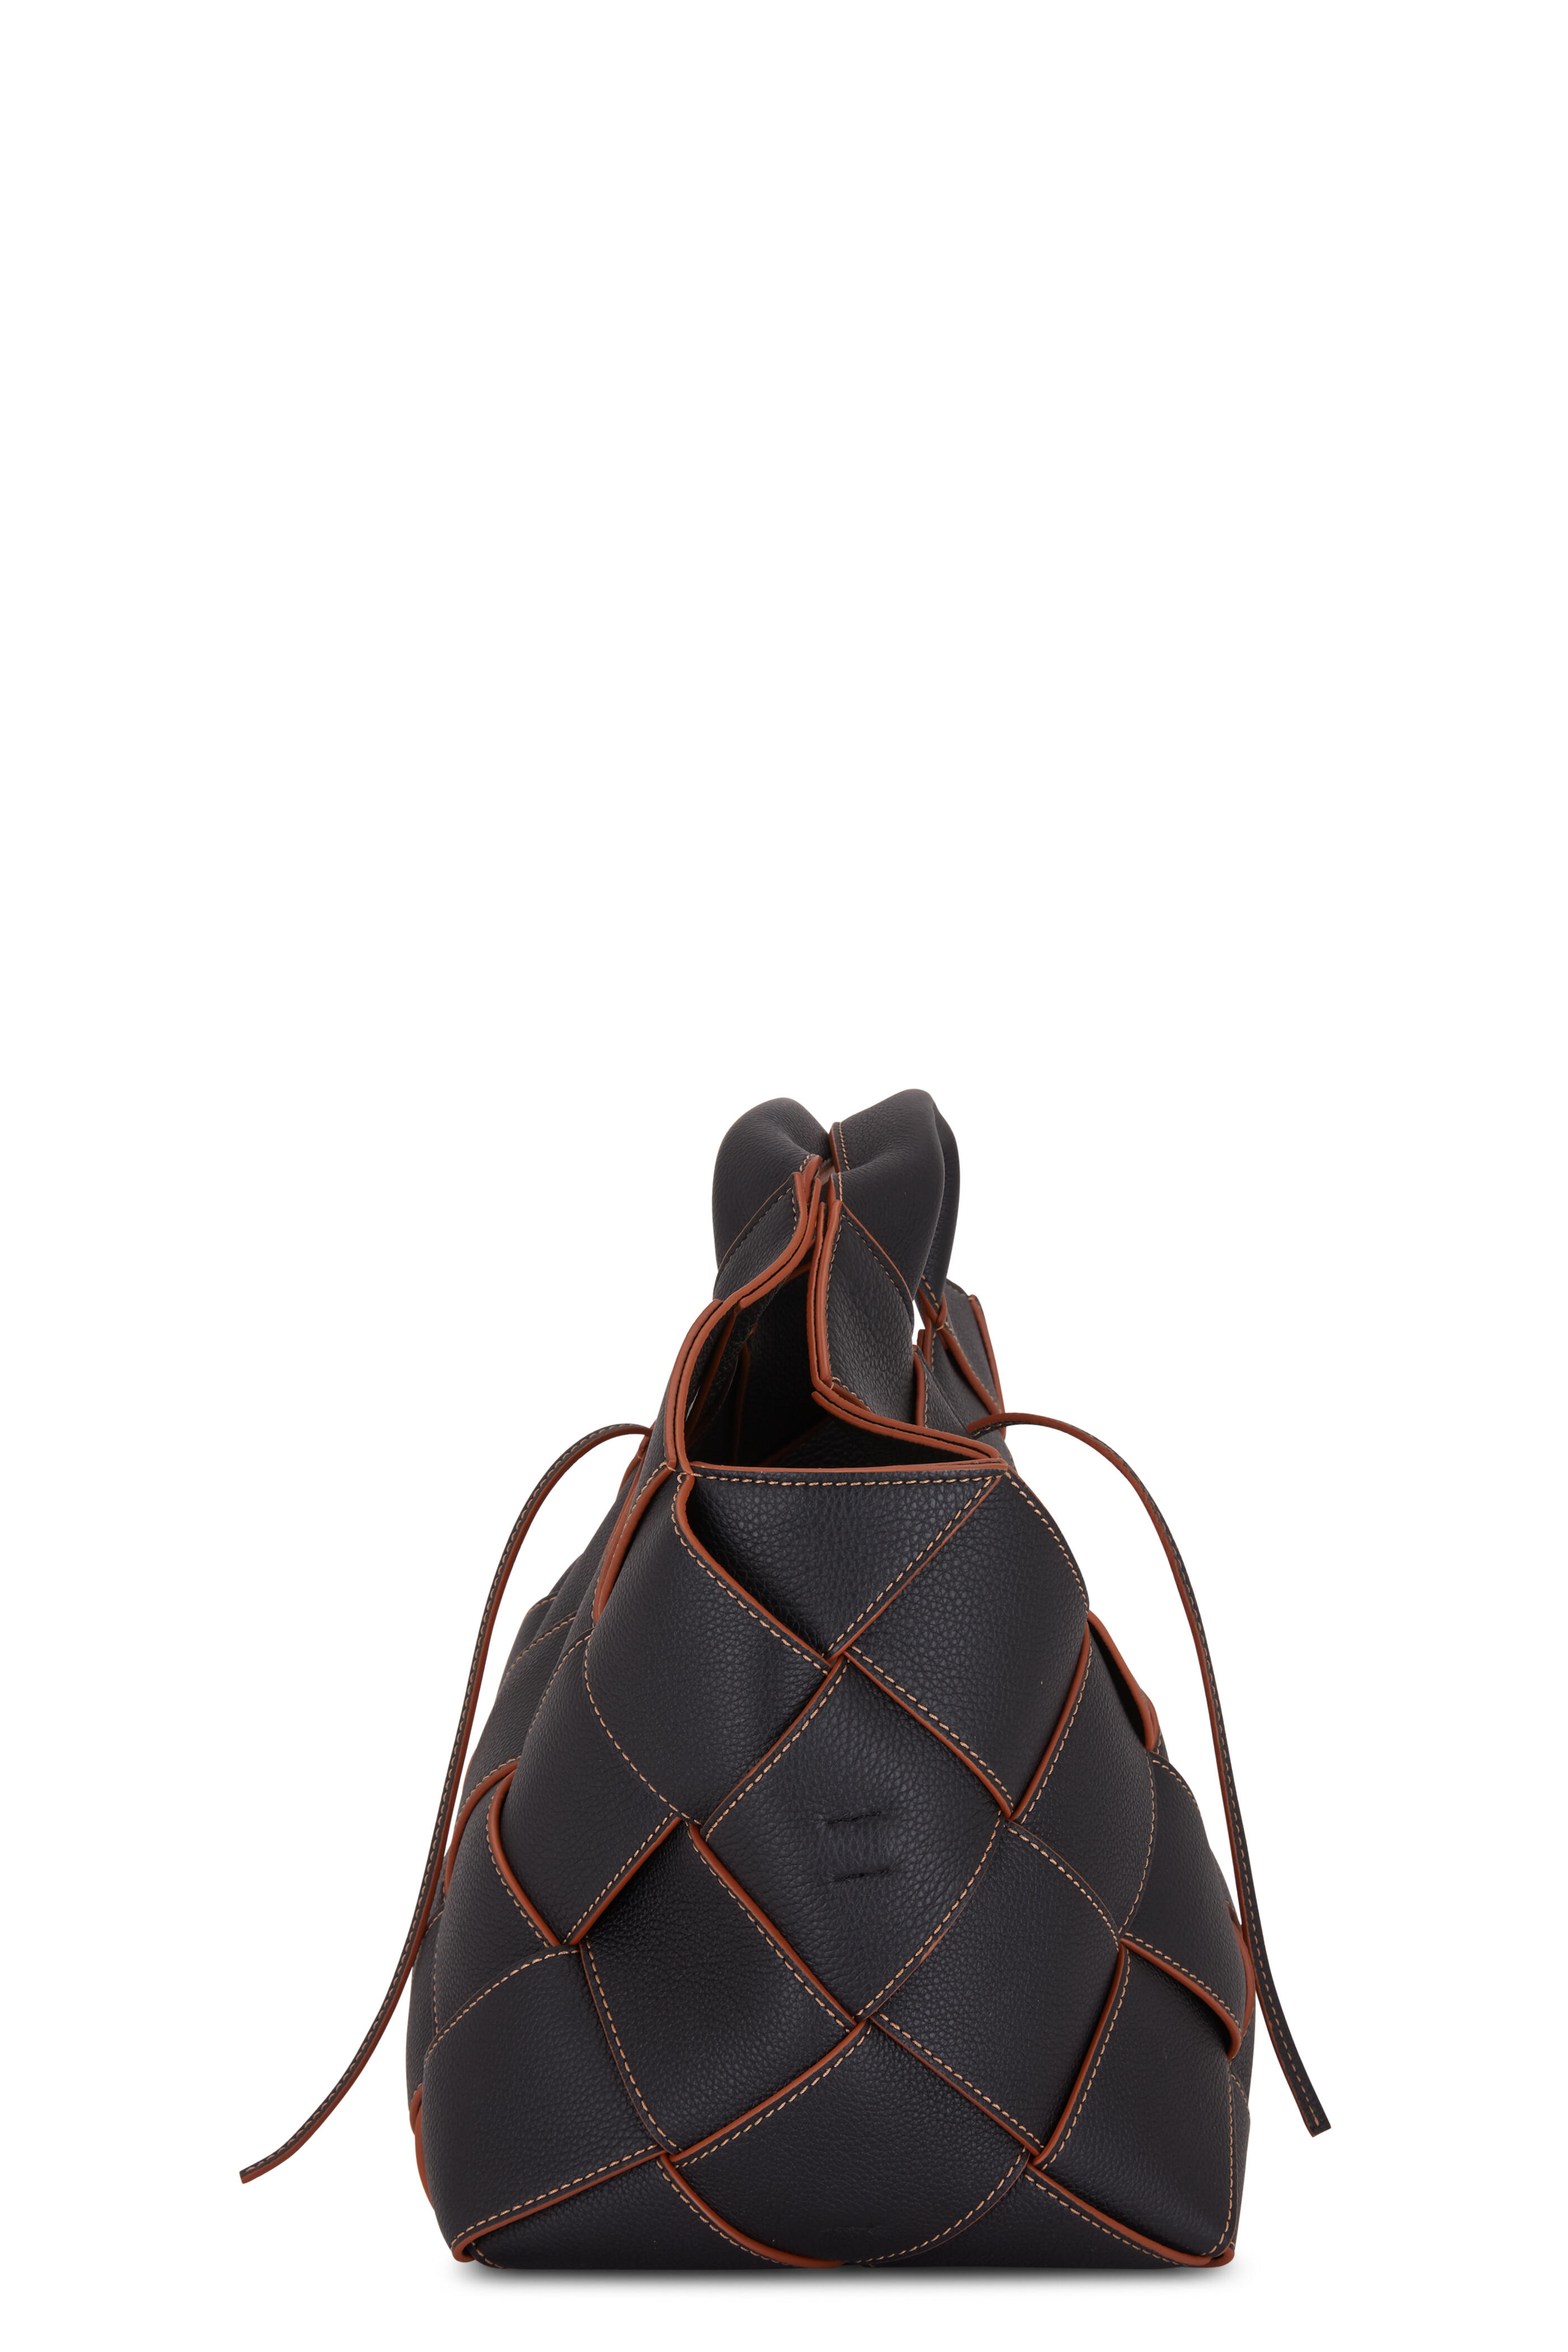 Loewe Medium Leather-Trimmed Woven Basket Bag - ShopStyle